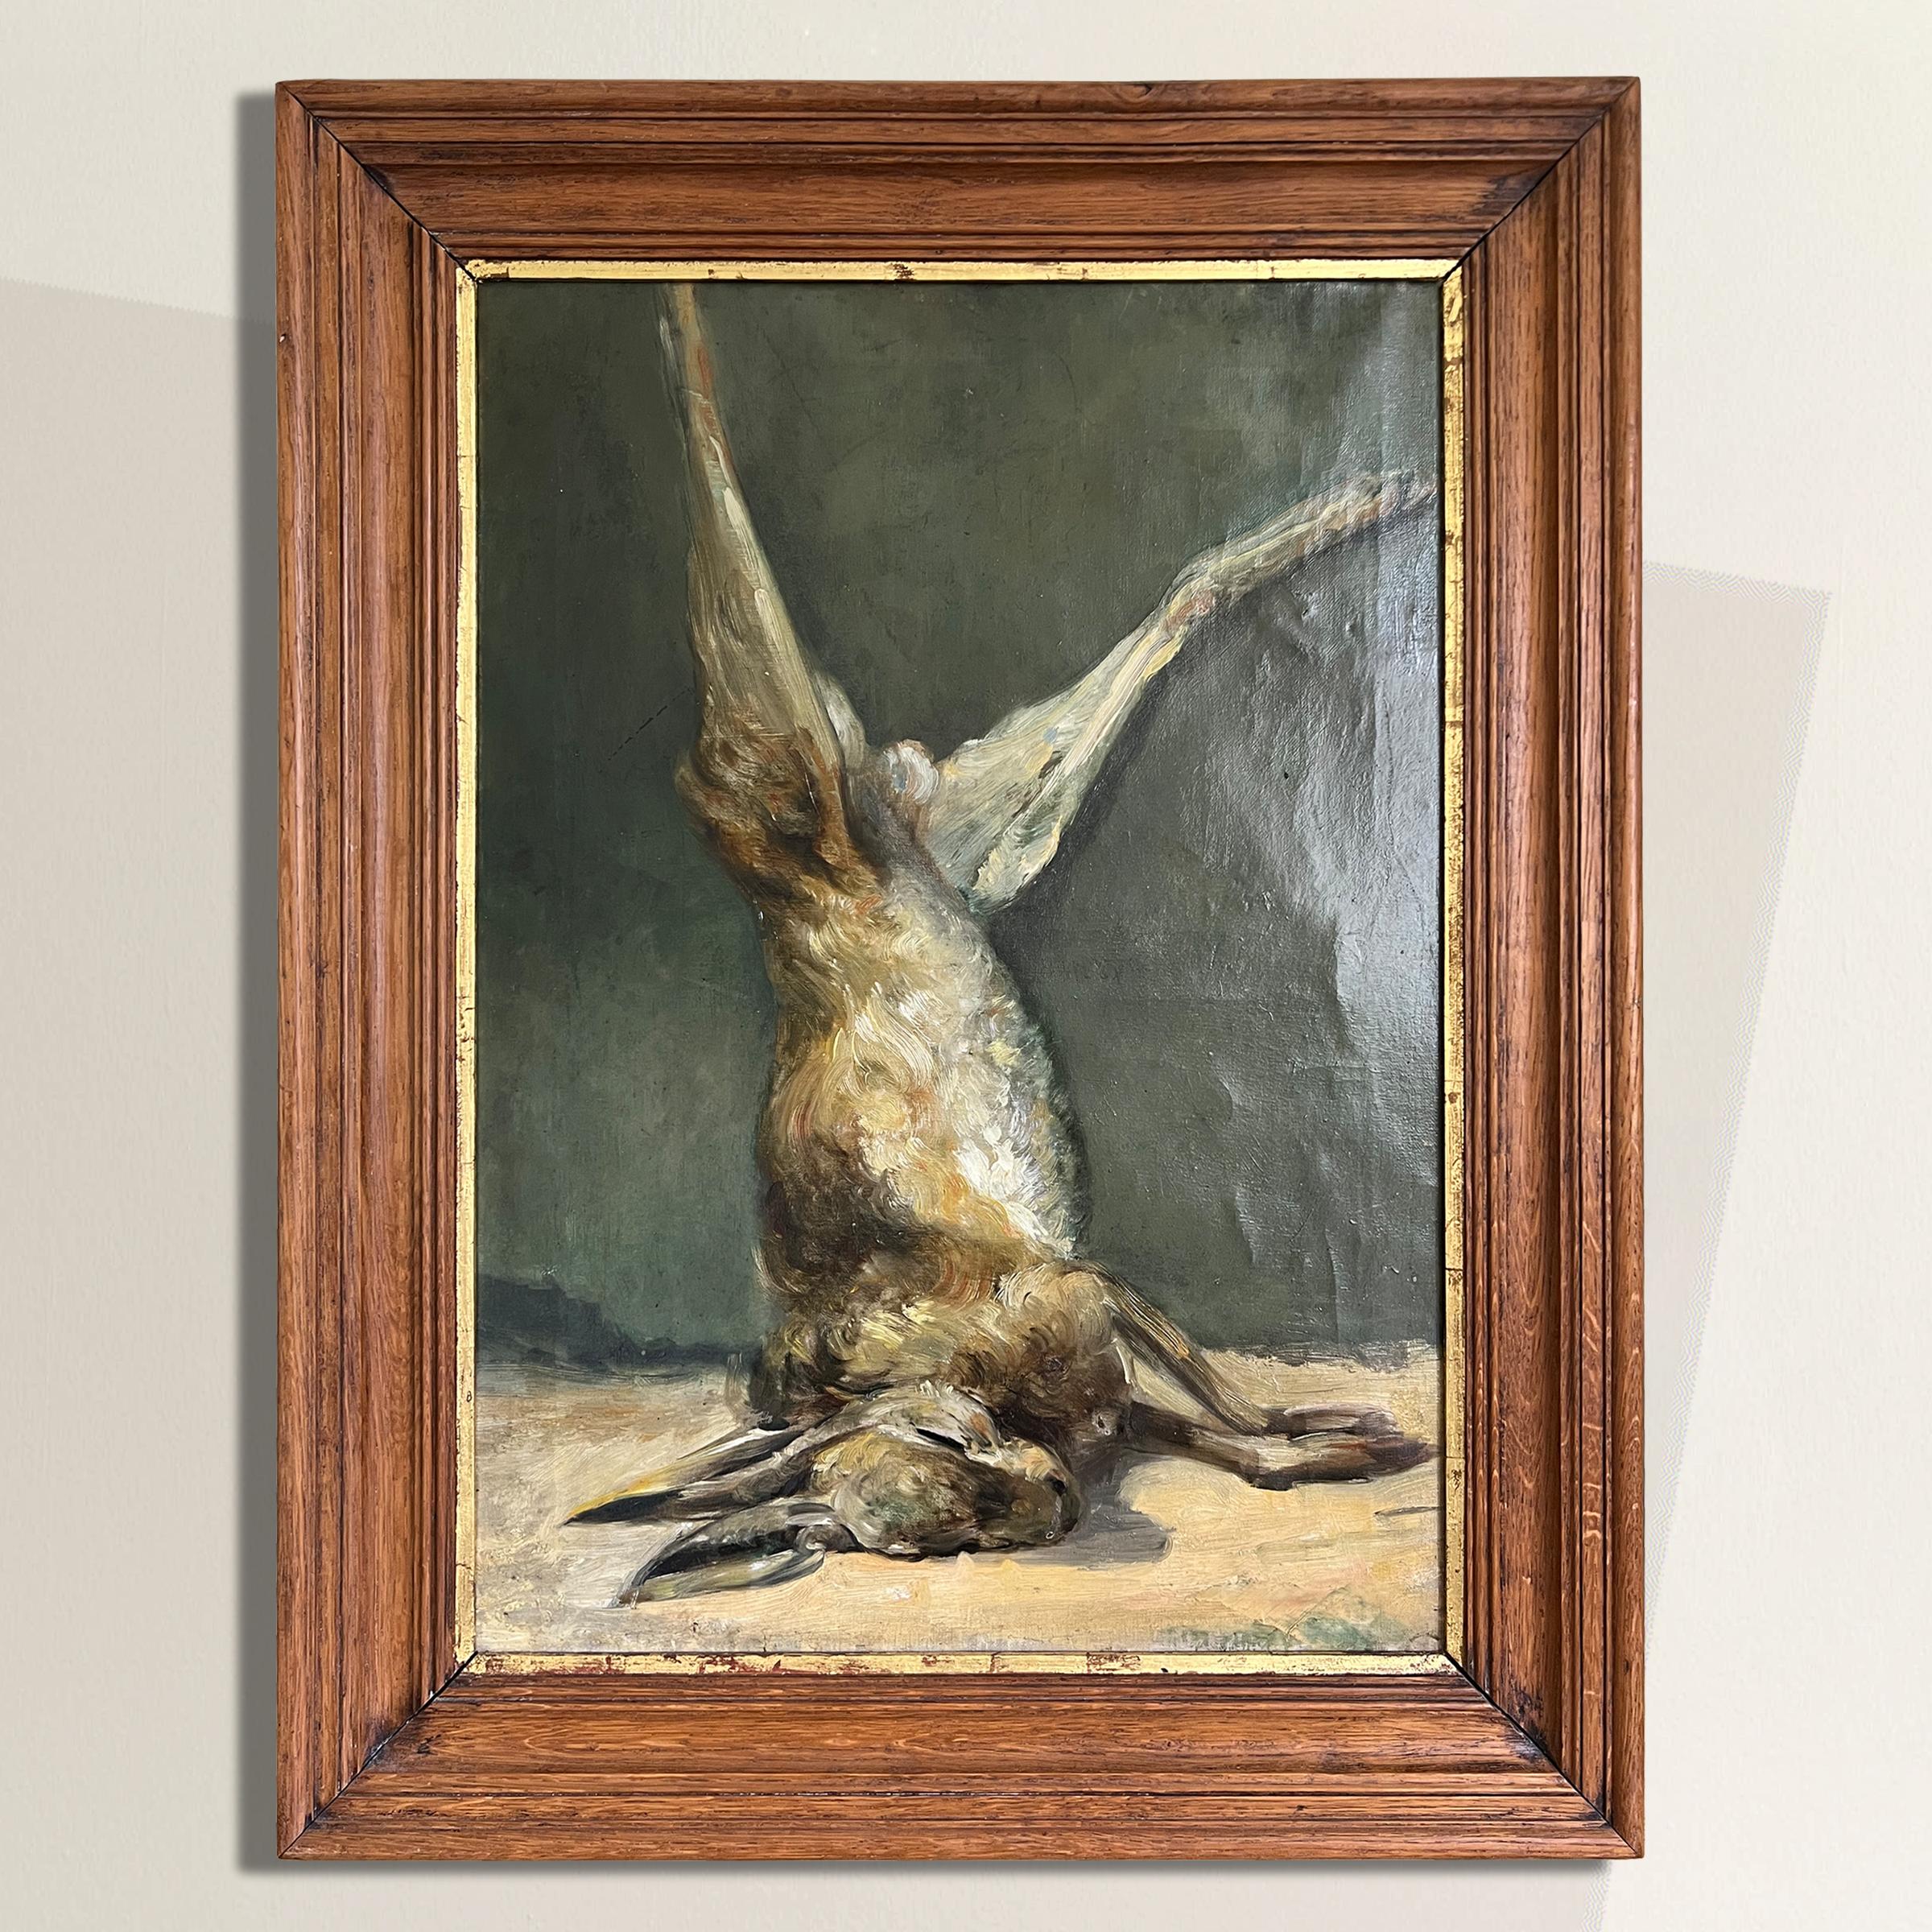 Ein atemberaubendes belgisches Stillleben aus dem 19. Jahrhundert in Öl auf Leinen, das eine Trophäe der Hasenjagd darstellt, mit unglaublicher Liebe zum Detail, einschließlich des taktilen Reizes des Hasenfells. Die Jagd war ein wichtiger